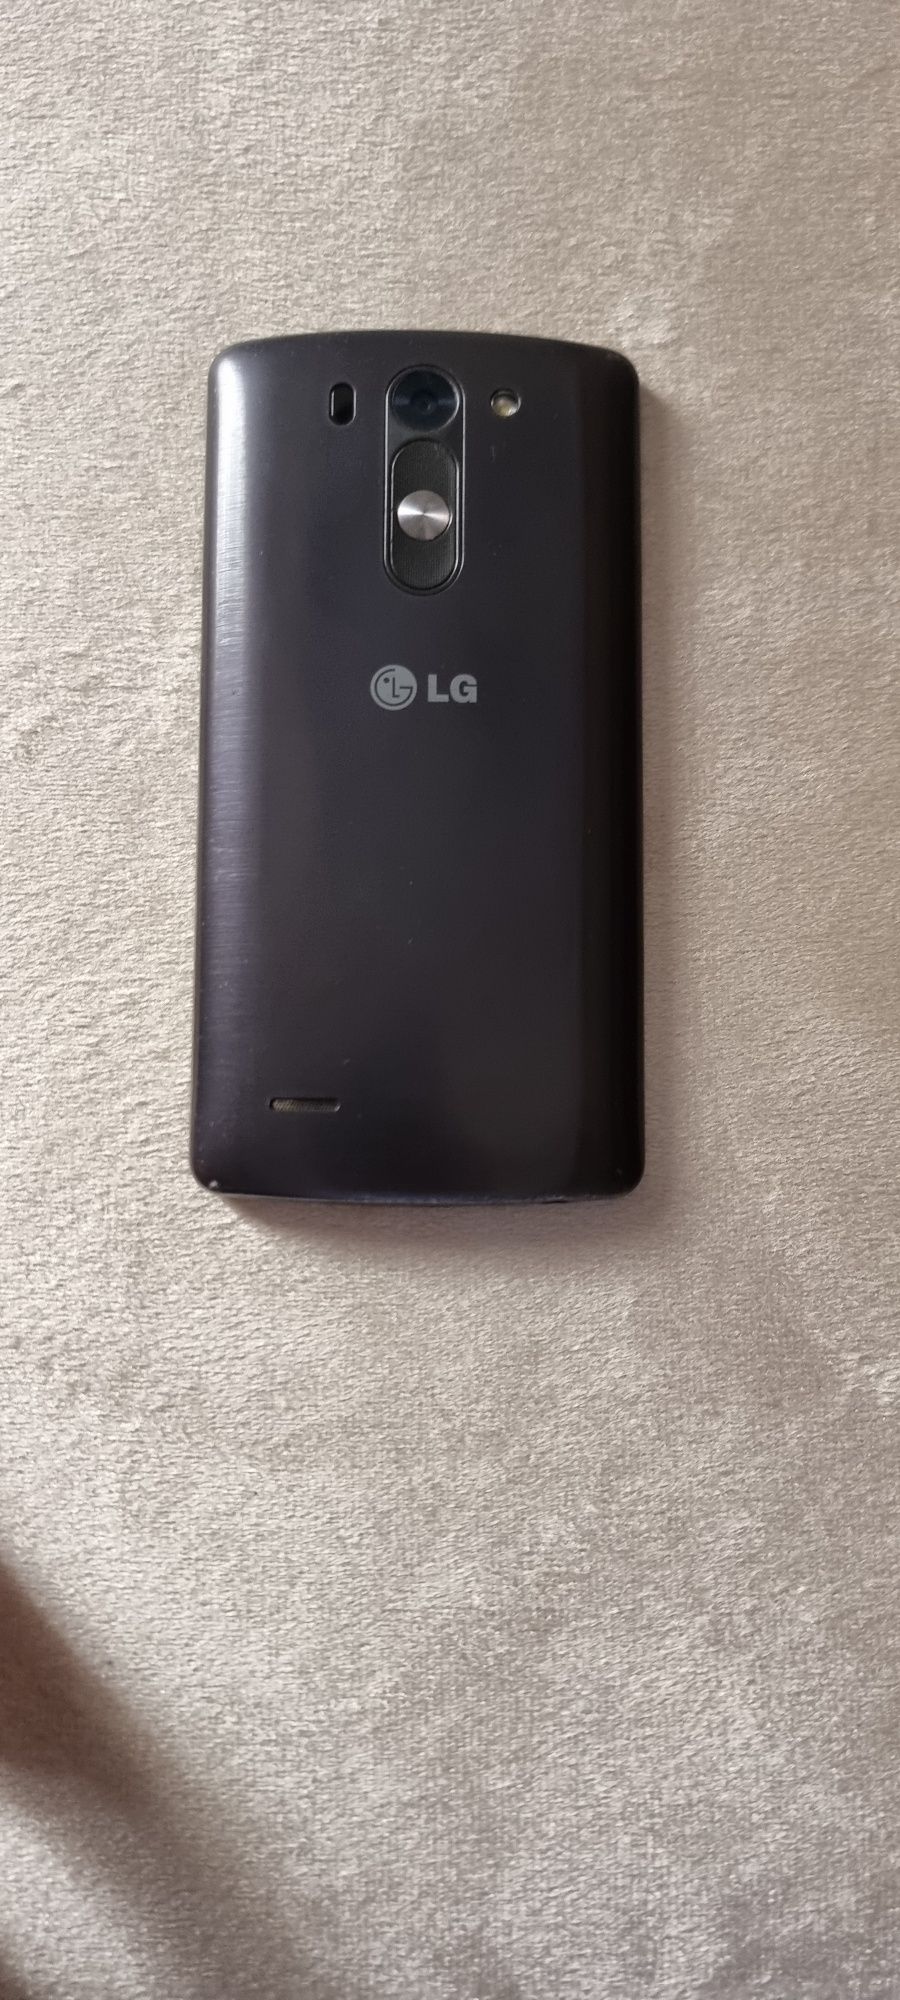 Телефон LG G3s android